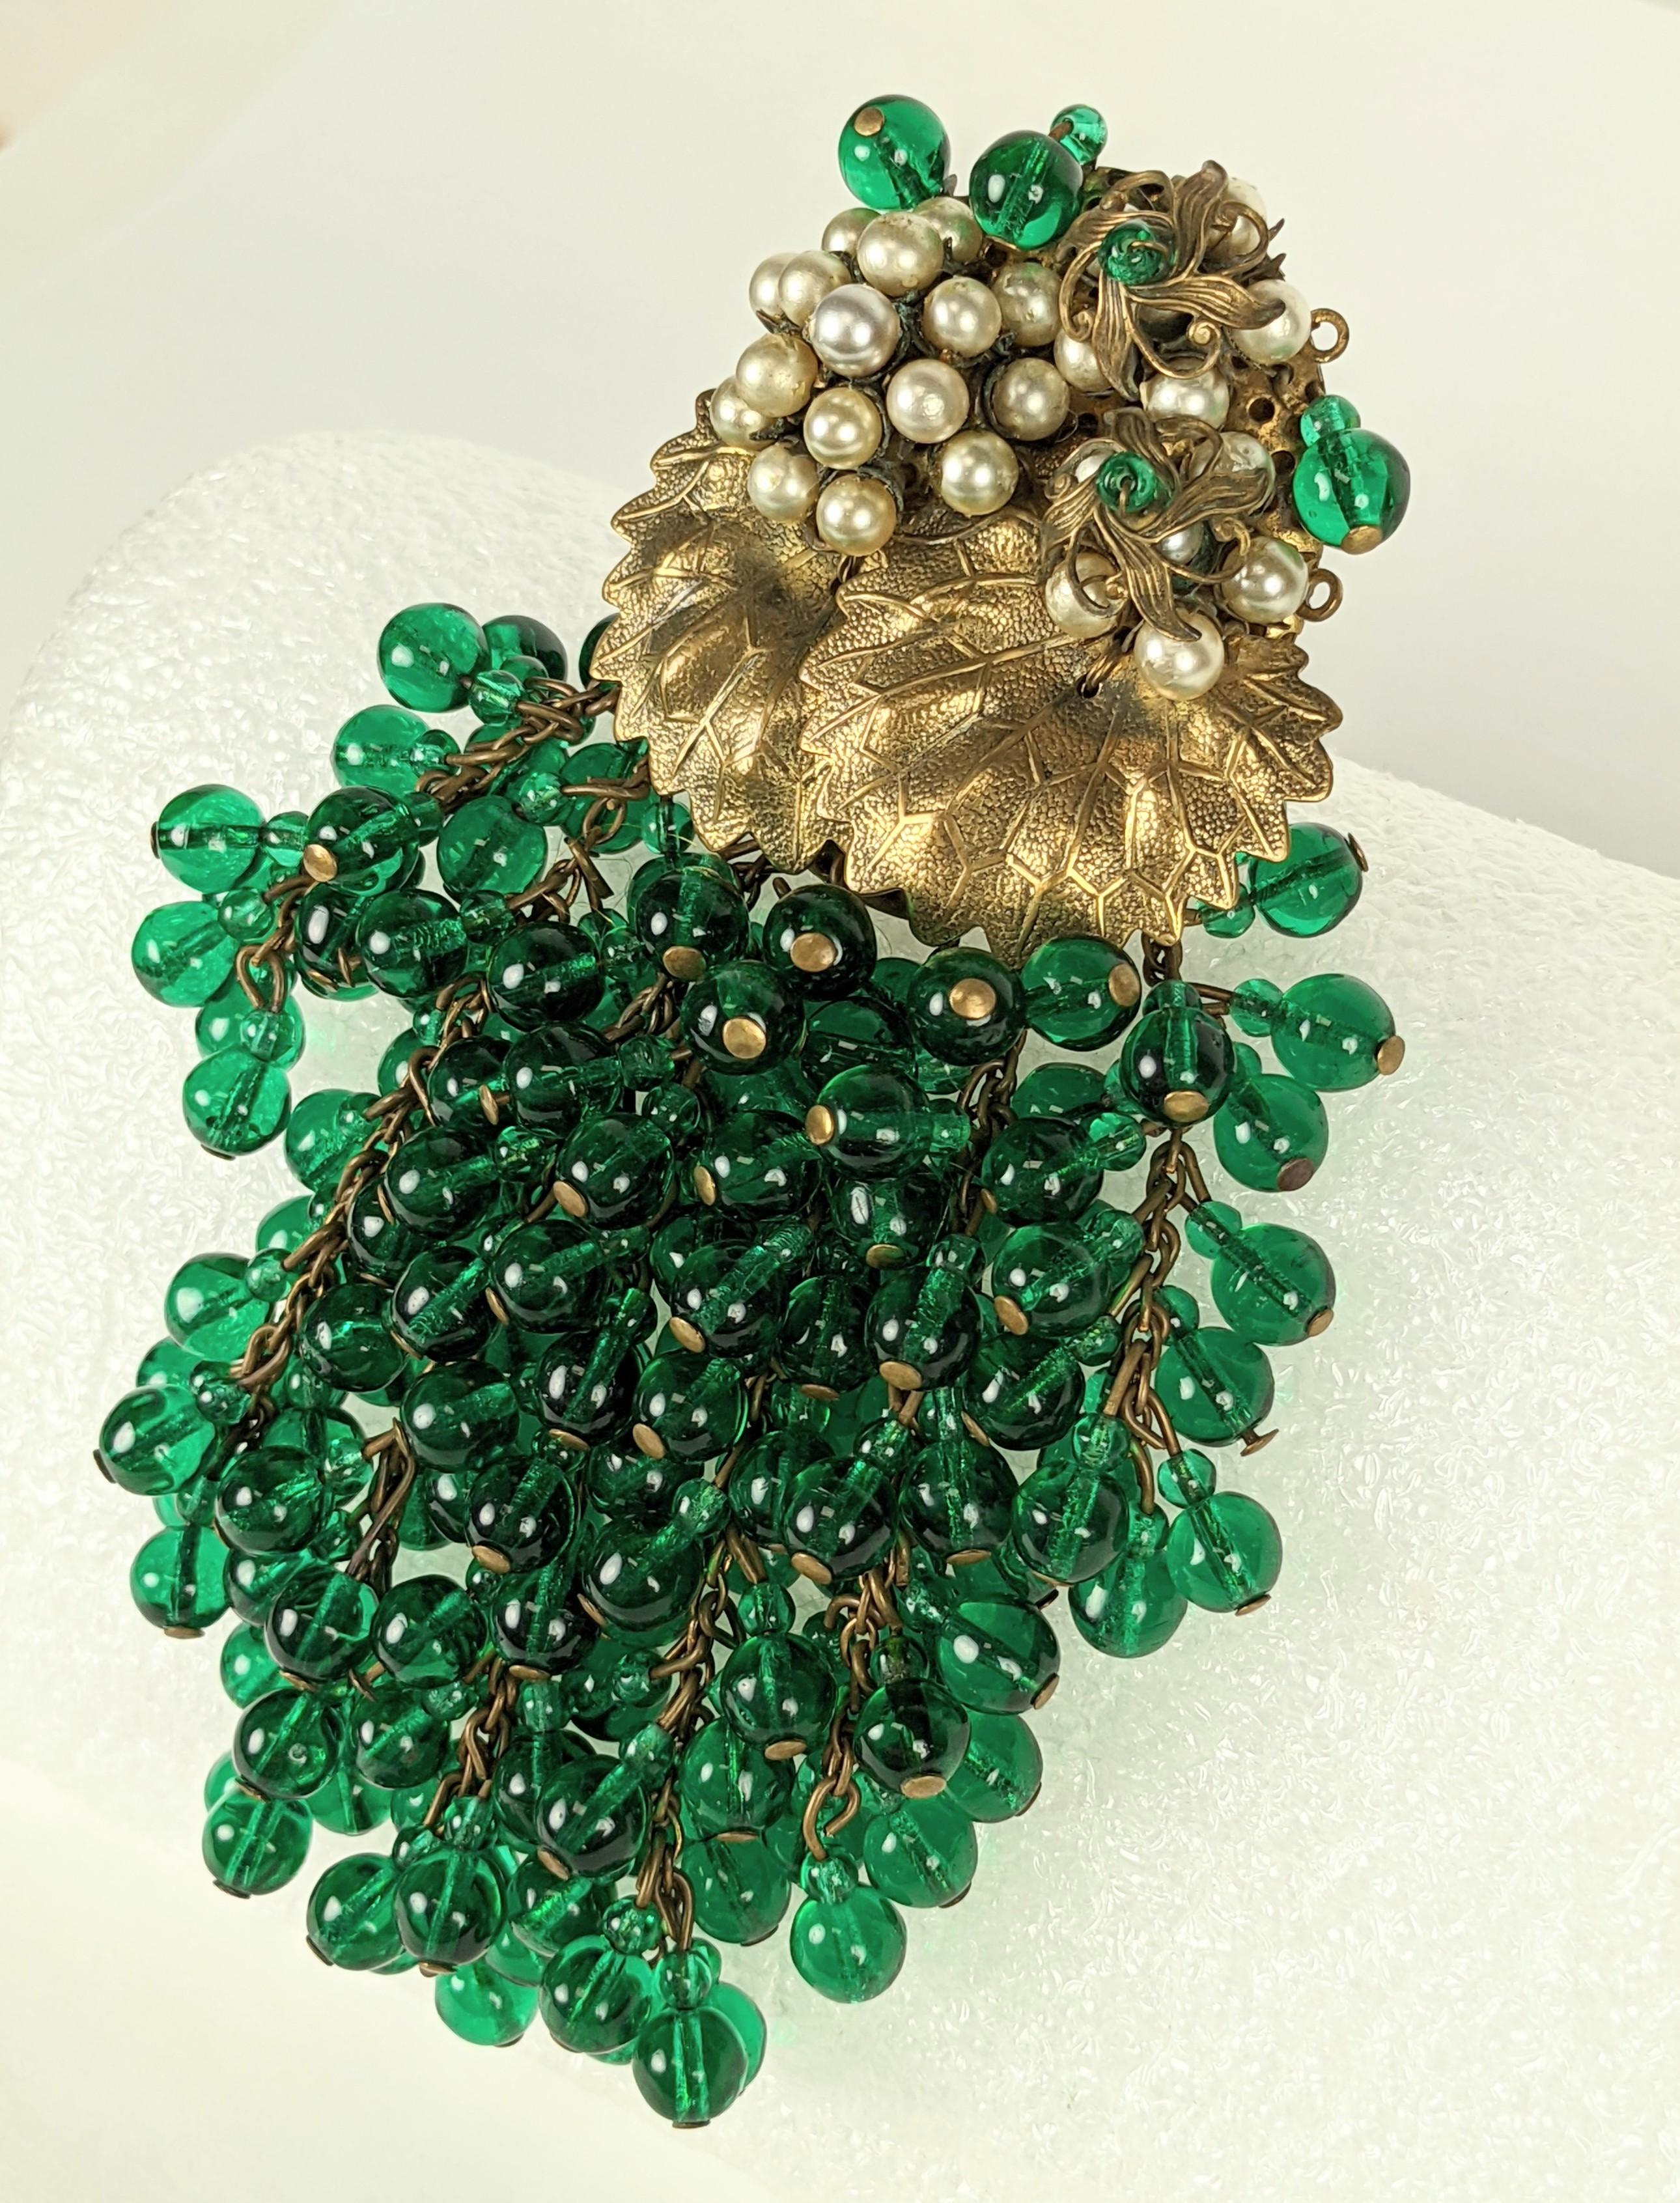 Super grande pince/broche Miriam Haskell Early Green Cluster Bead des années 1930. Des grappes de perles de raisin vertes tombent des feuilles de laiton brodées de fausses perles et d'autres perles vertes. 
Les premières pièces ne sont pas signées,